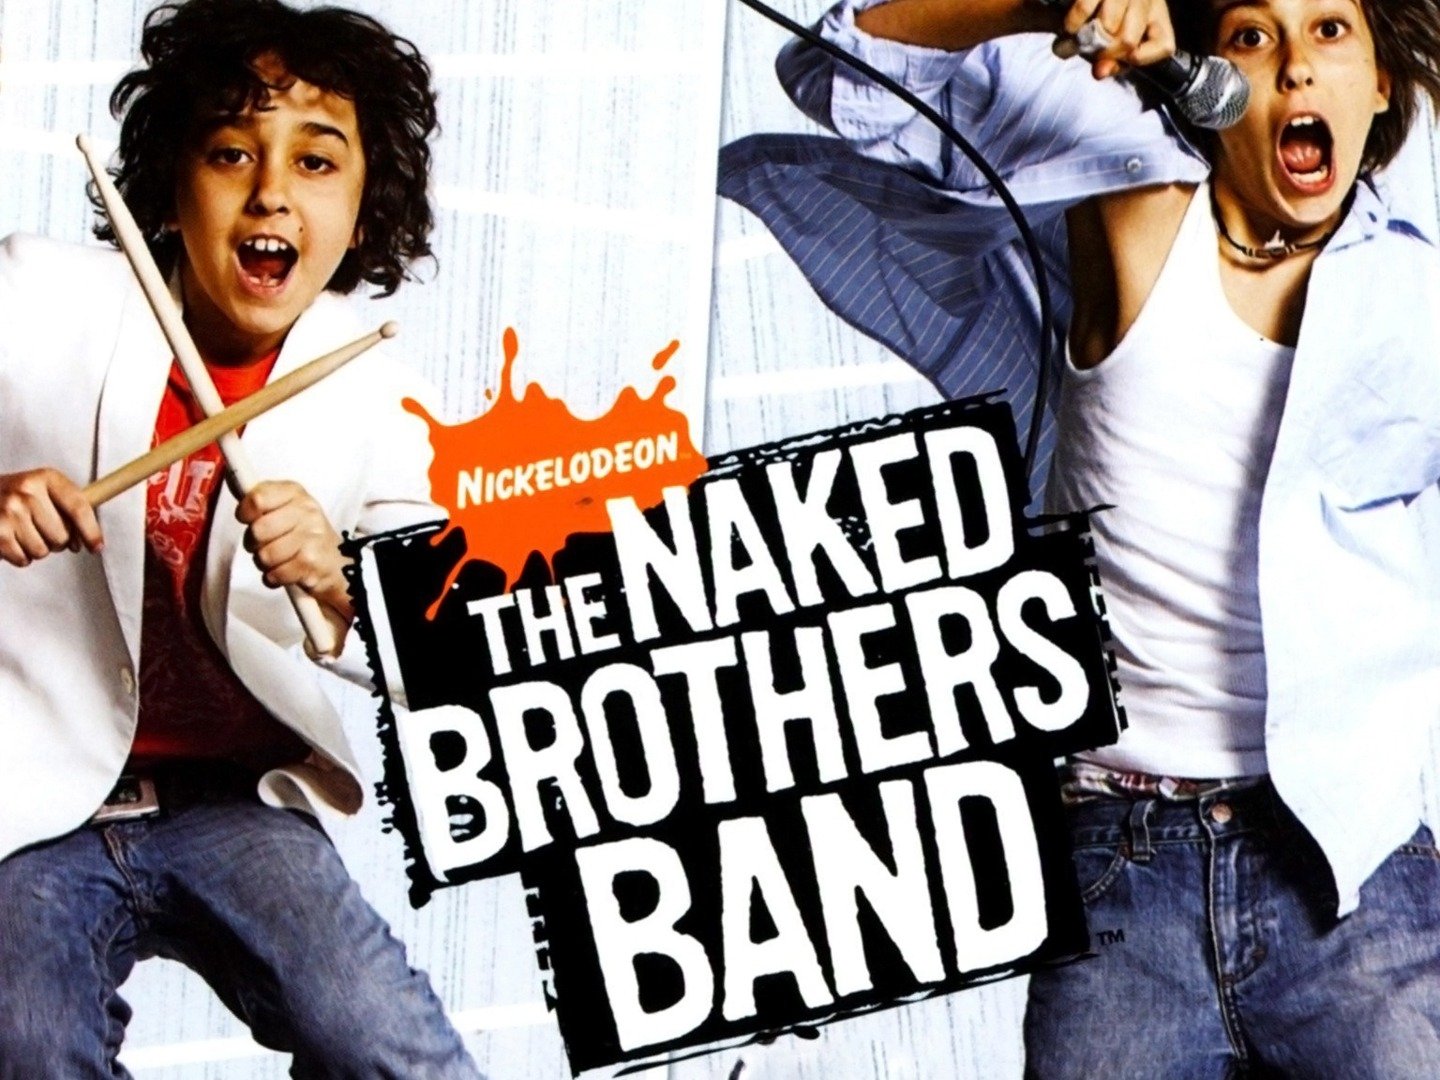 Naked brothers band shirts